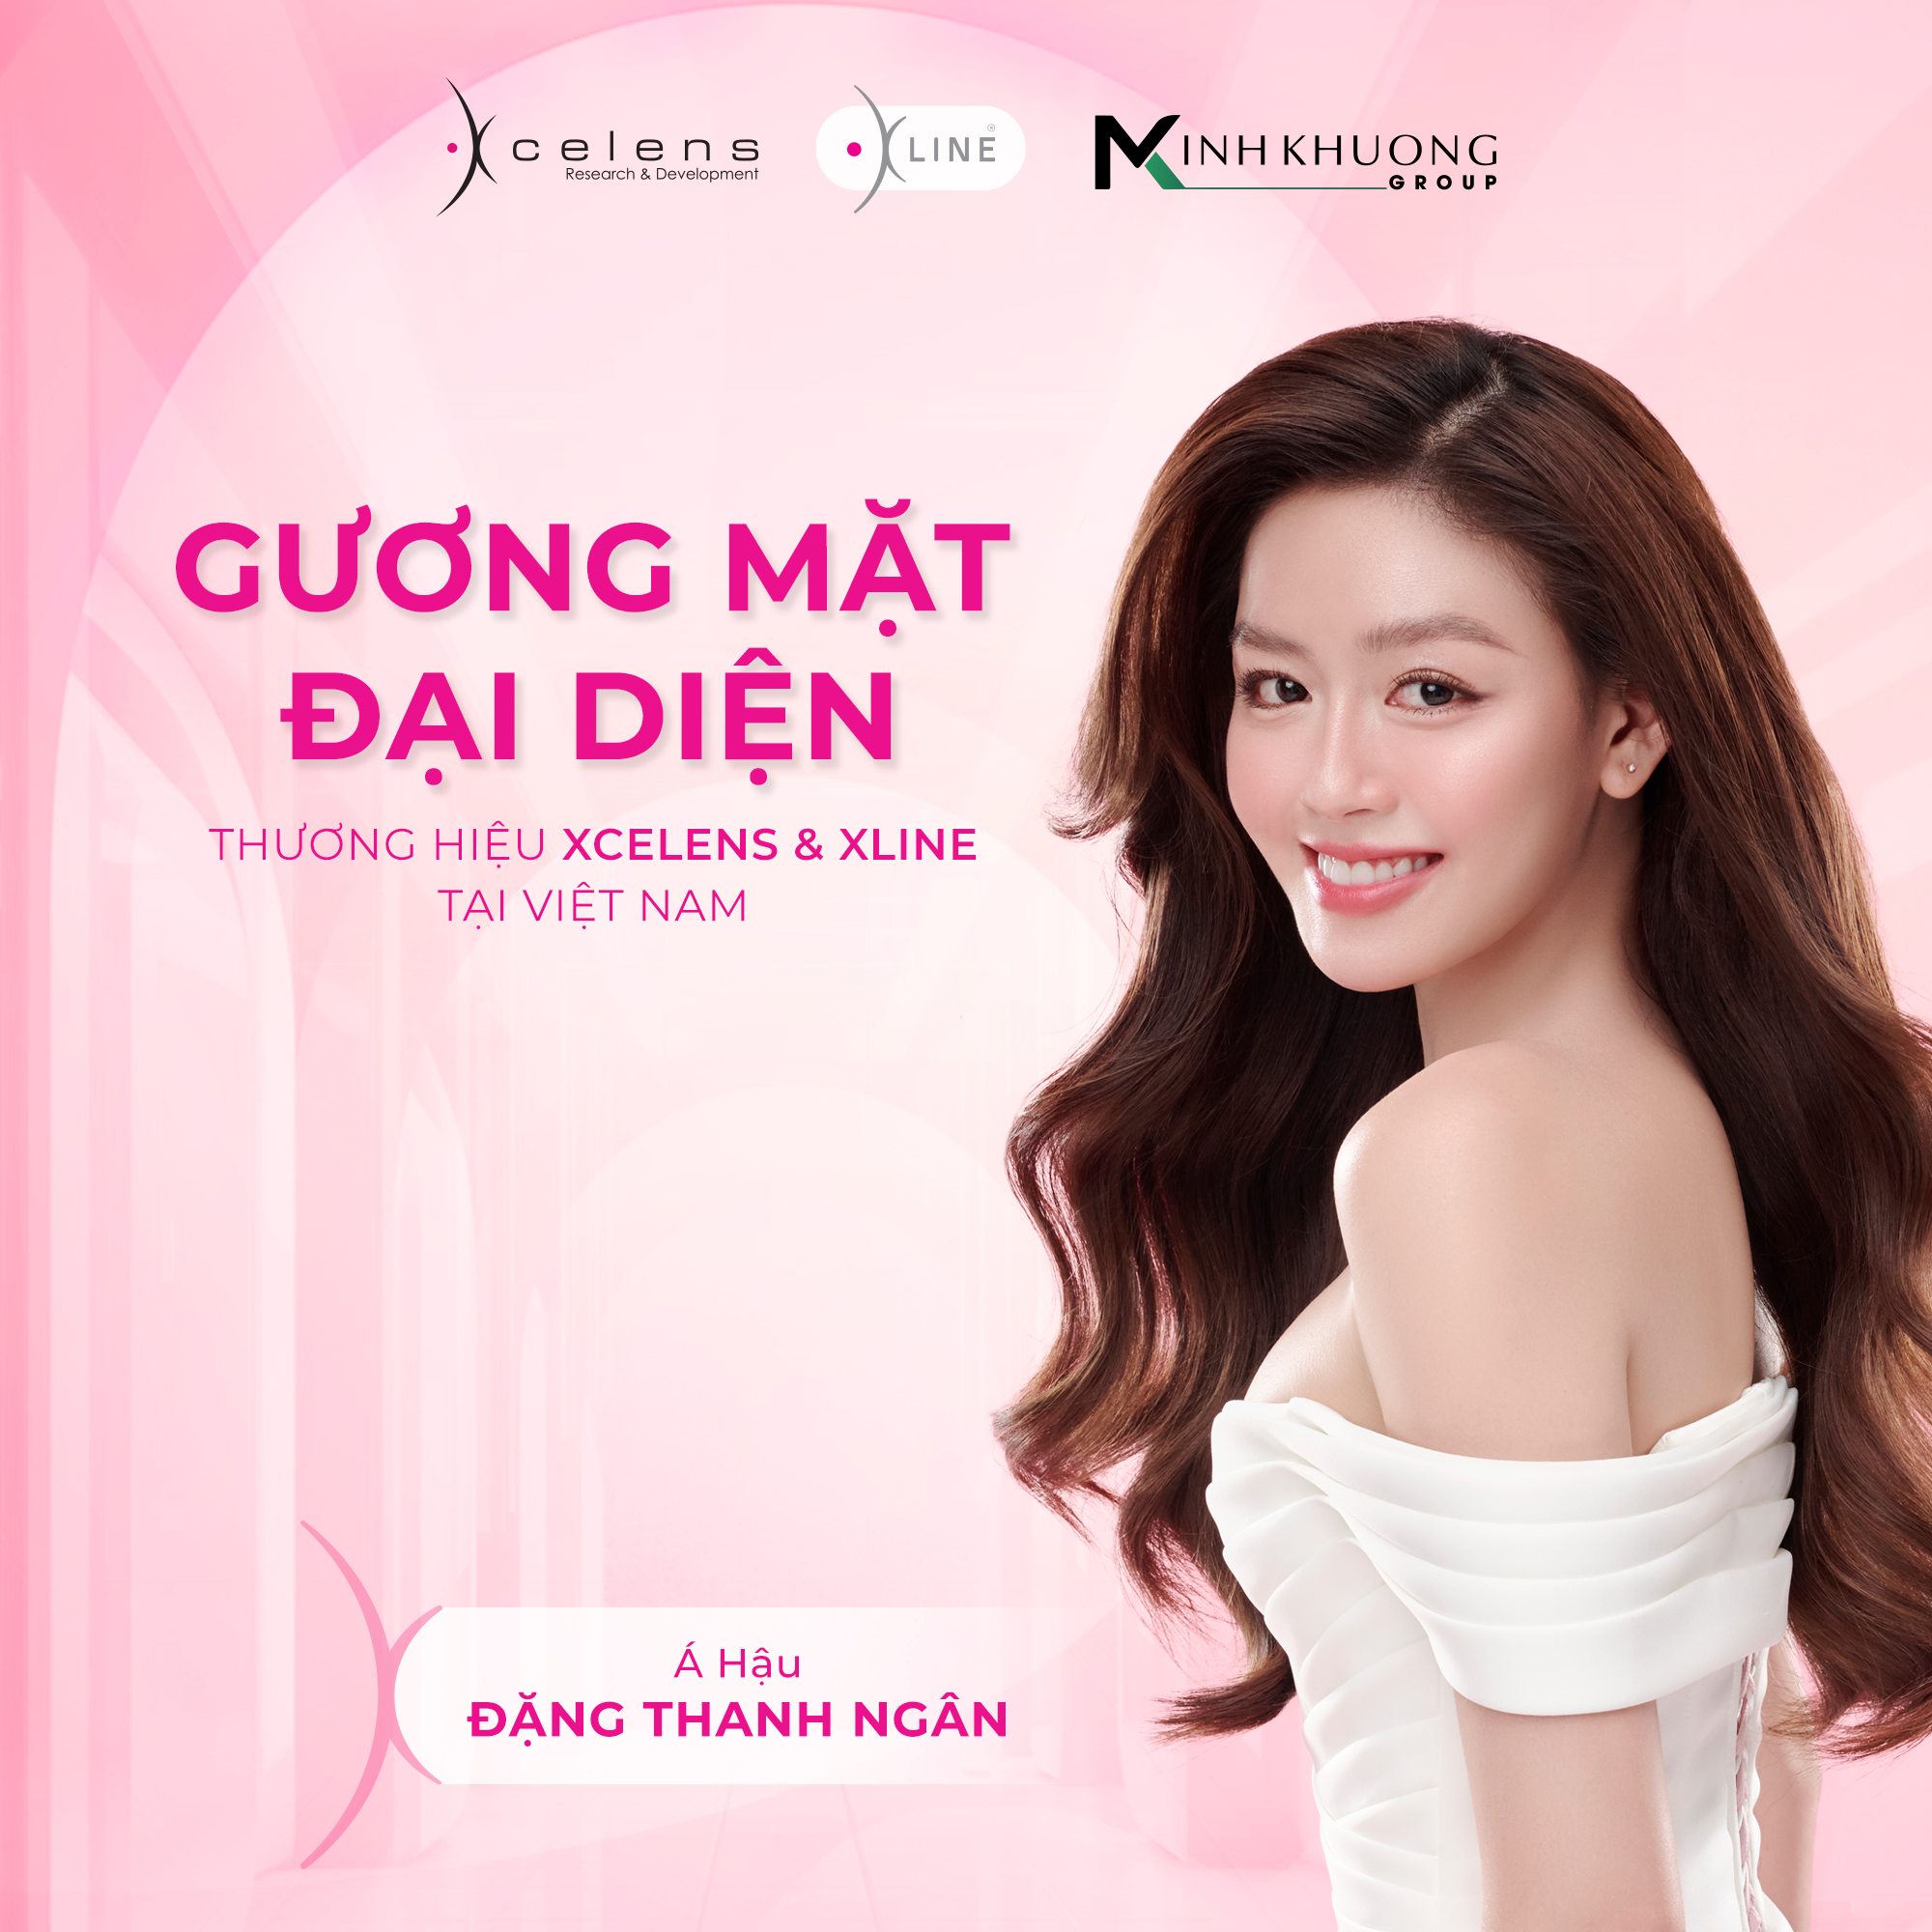 Á hậu Đặng Thanh Ngân - Gương mặt đại diện Xcelens & Xline tại Việt Nam